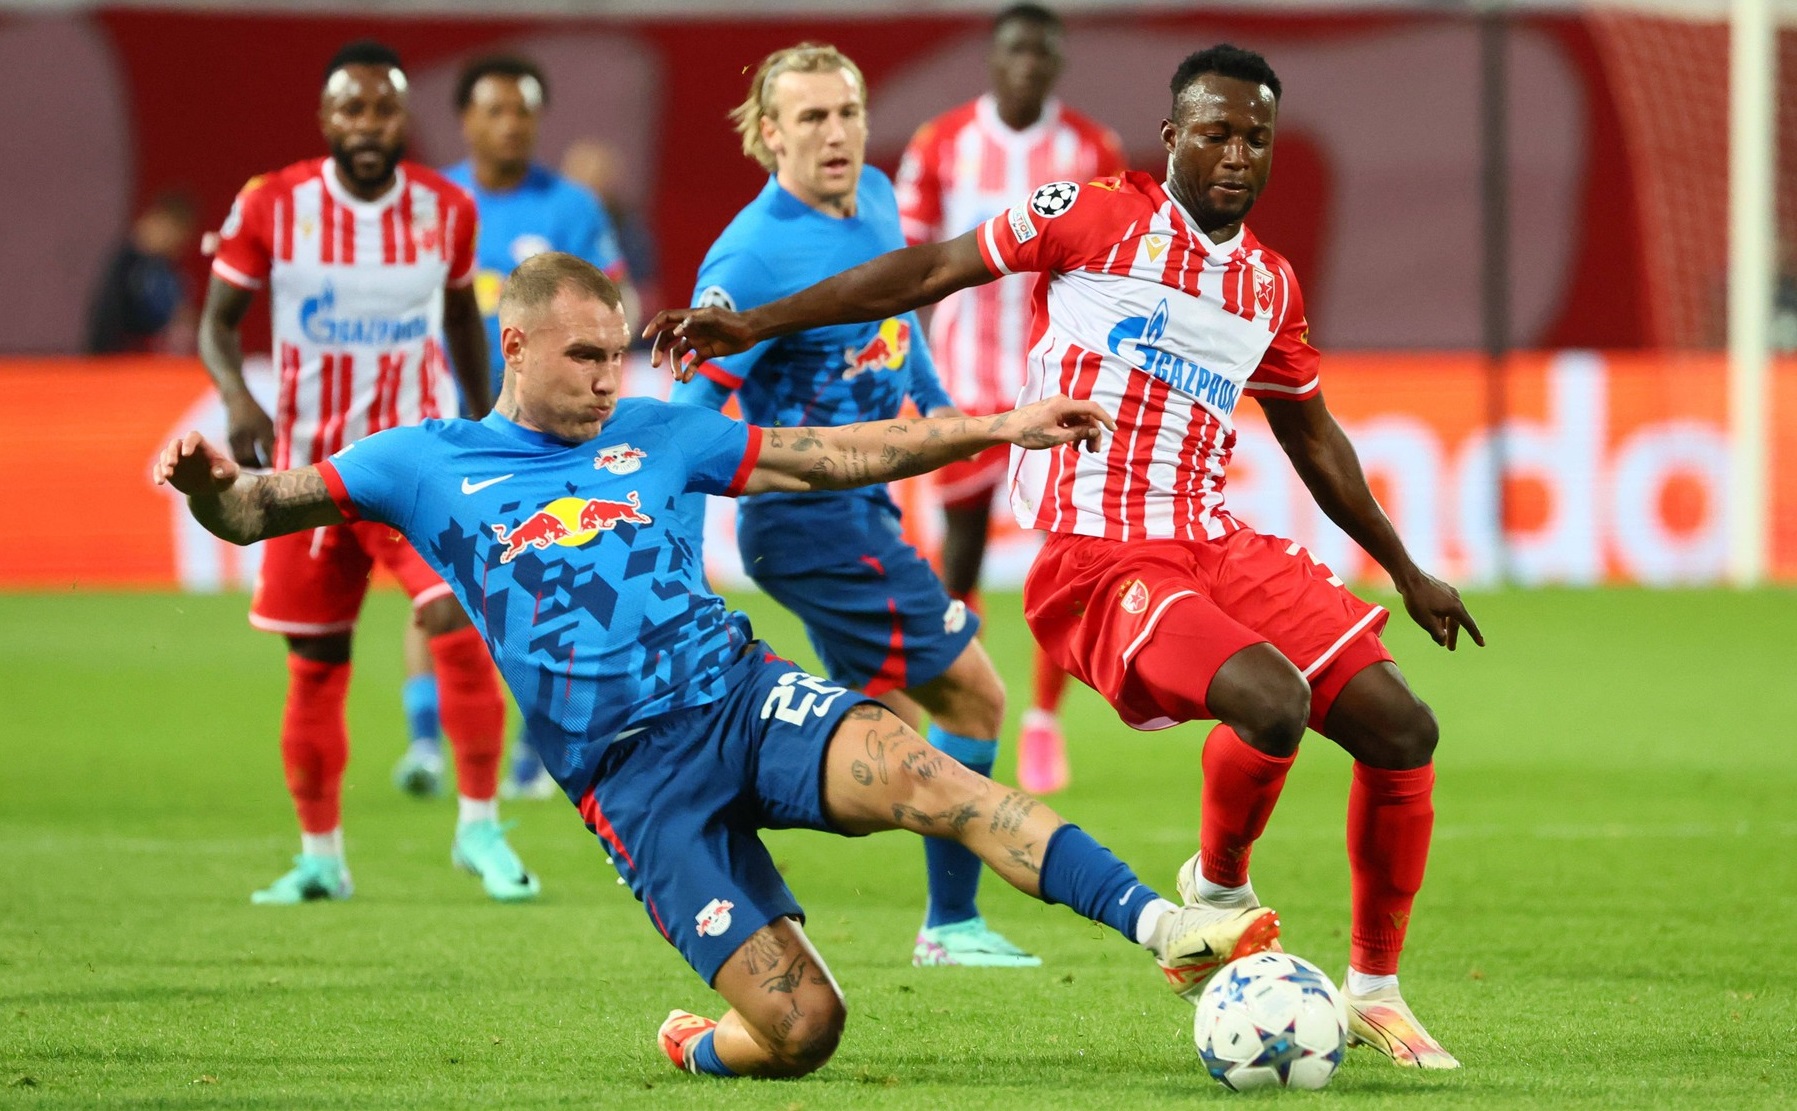 Steaua Roșie Belgrad - RB Leipzig 1-2. Nemții merg în primăvara europeană, după un nou succes contra sârbilor